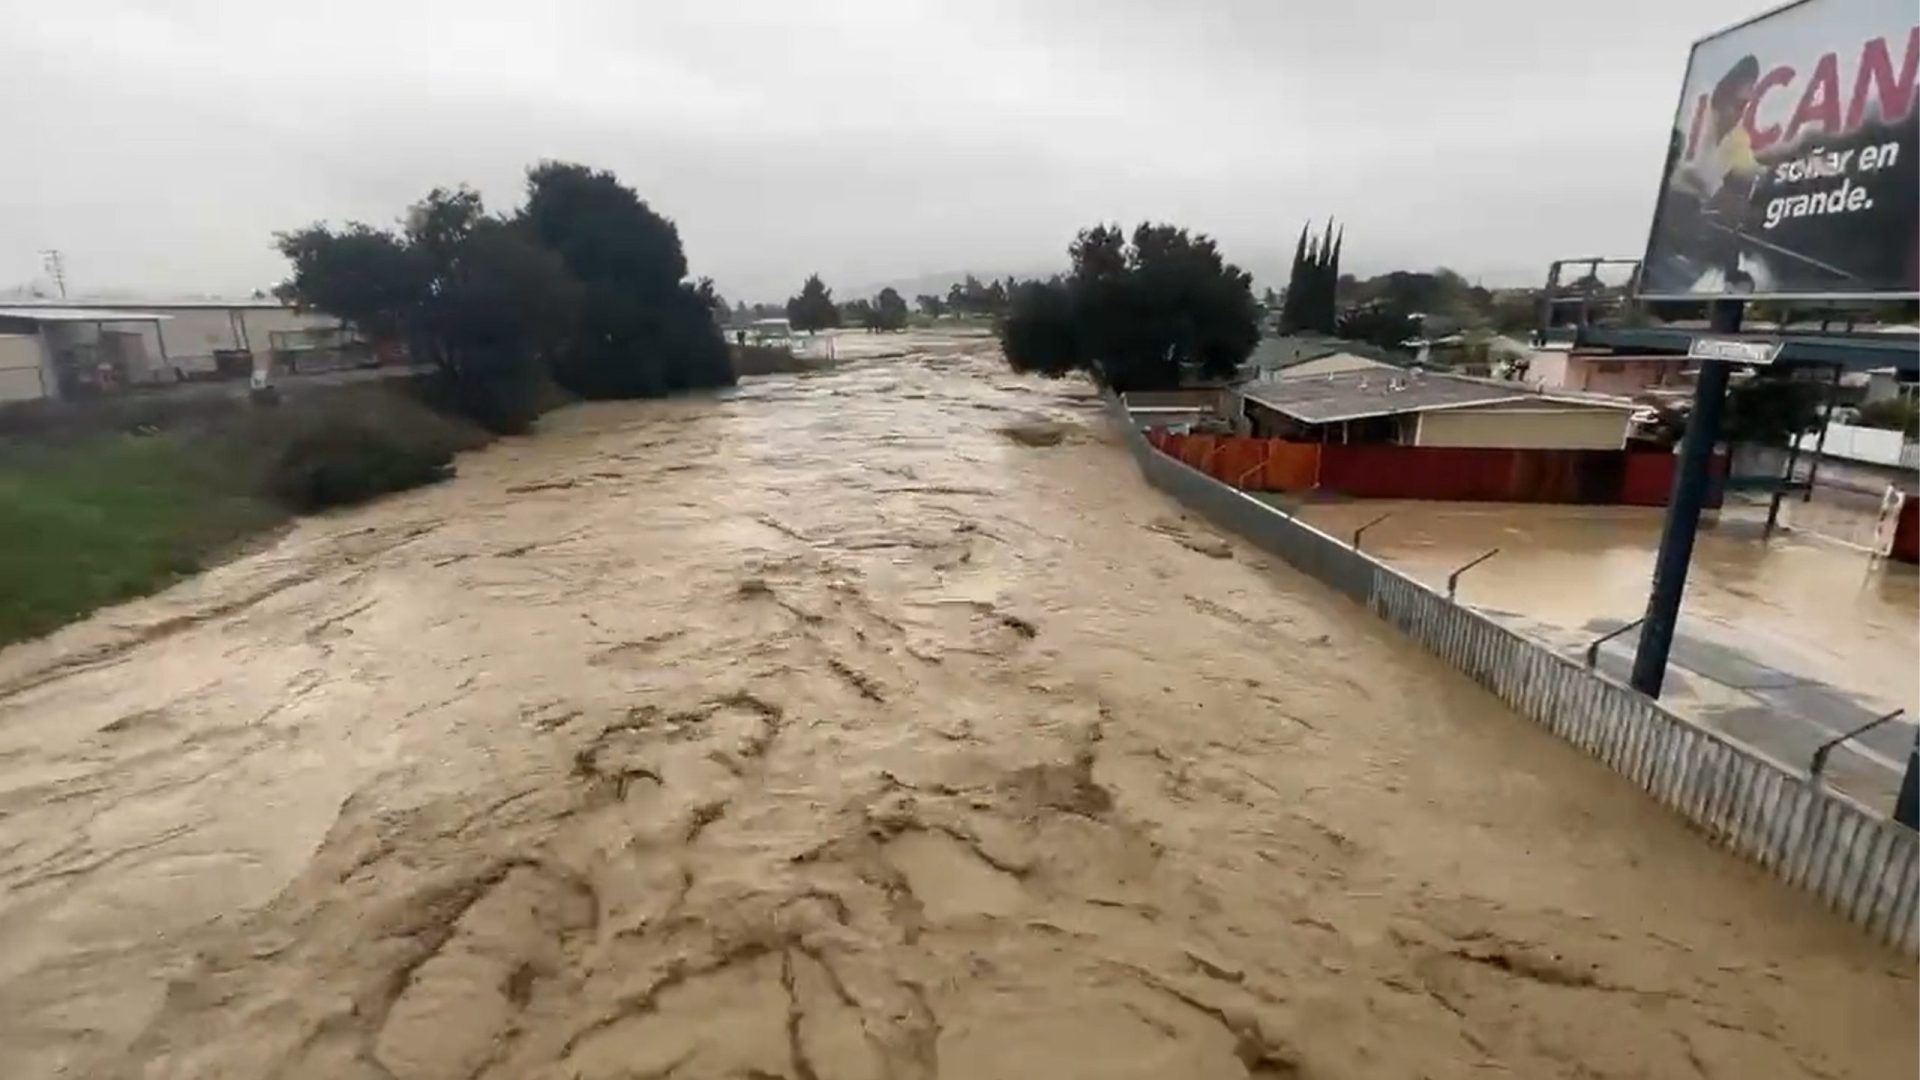 Tempesdade Mais de 34 milhões de pessoas estavam sob alerta de enchentes nesta terça, informou o Serviço Nacional de Meteorologia - Foto: Reprodução/Twitter@danncianca